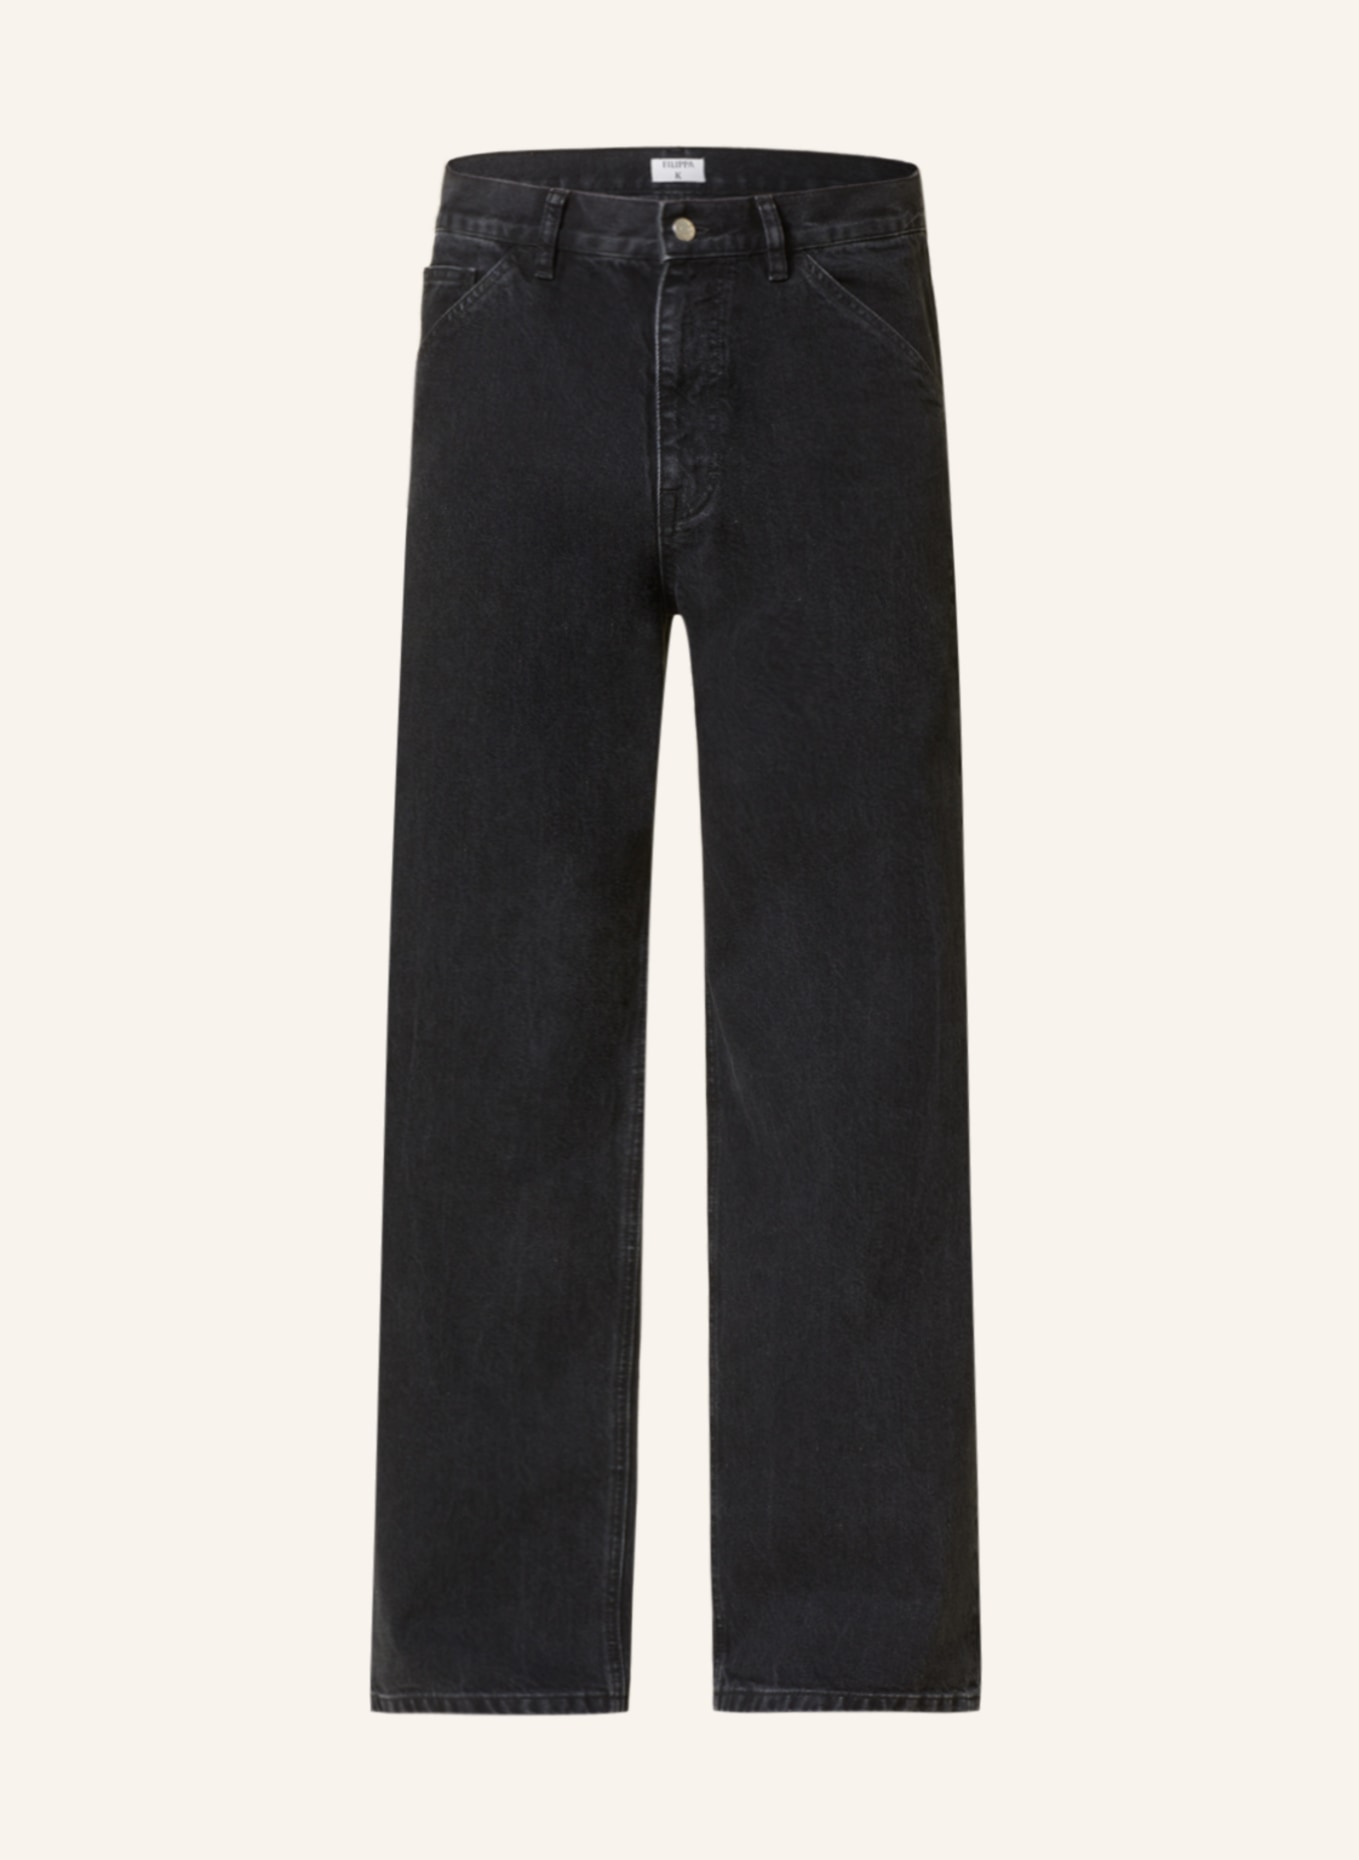 Filippa K Jeans regular fit, Color: 9897 Charcoal Black (Image 1)